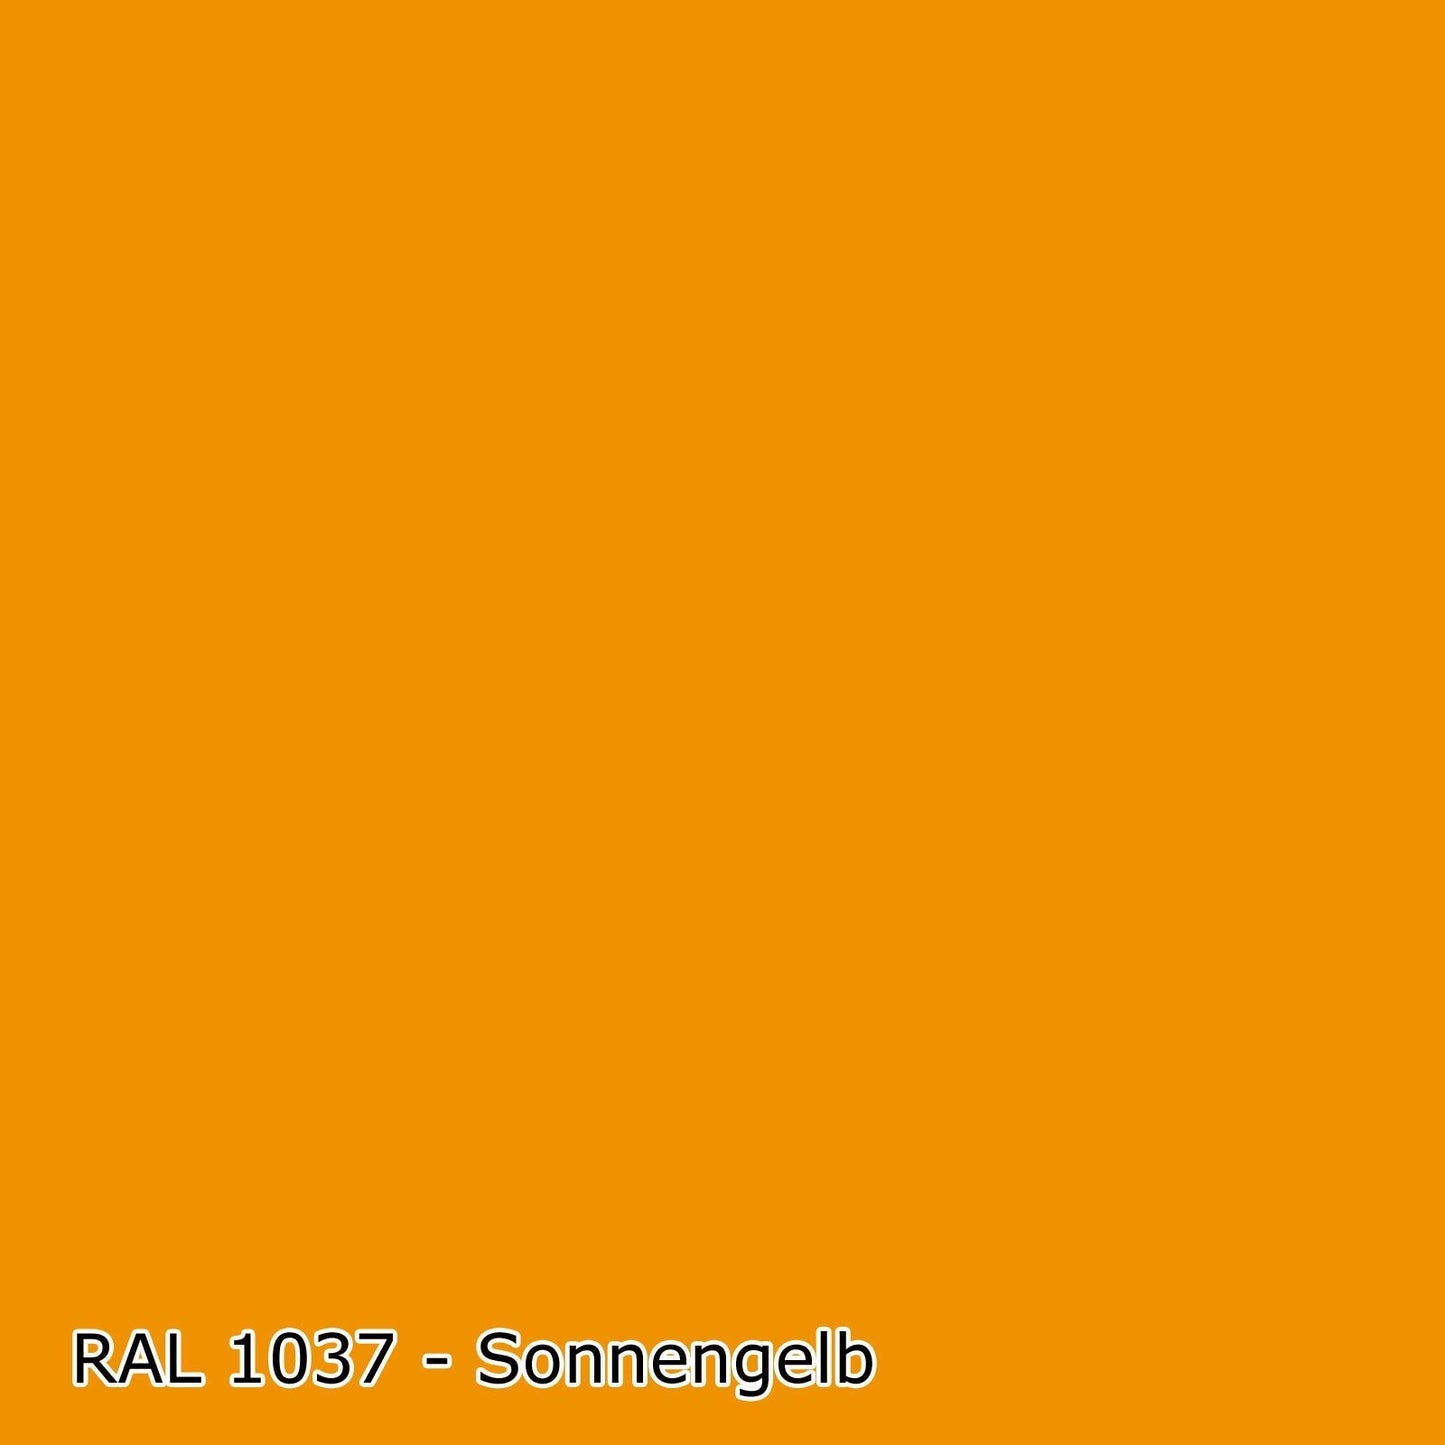 2,5 L Latexfarbe, RAL Farbwahl - MATT (RAL 1000 - 6007)